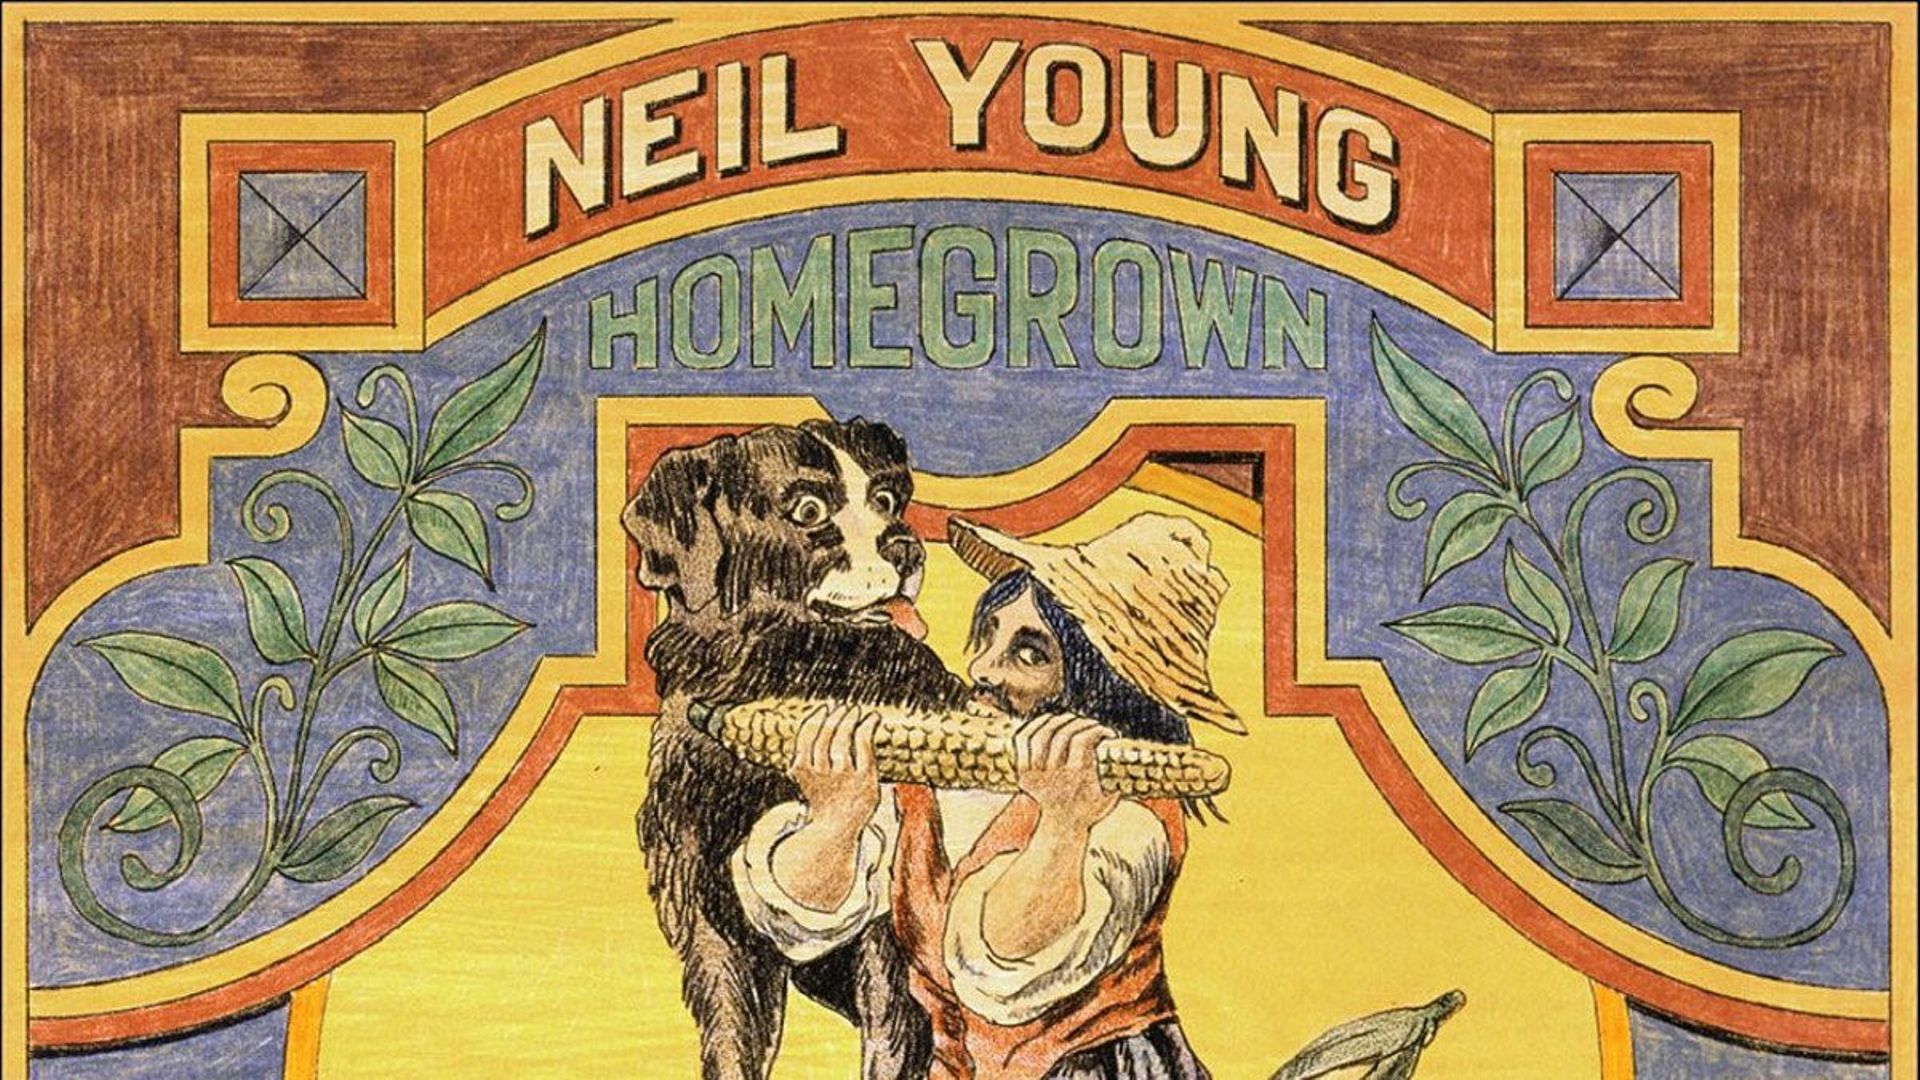 Un inédit de Neil young, écrit il y a 46 ans !